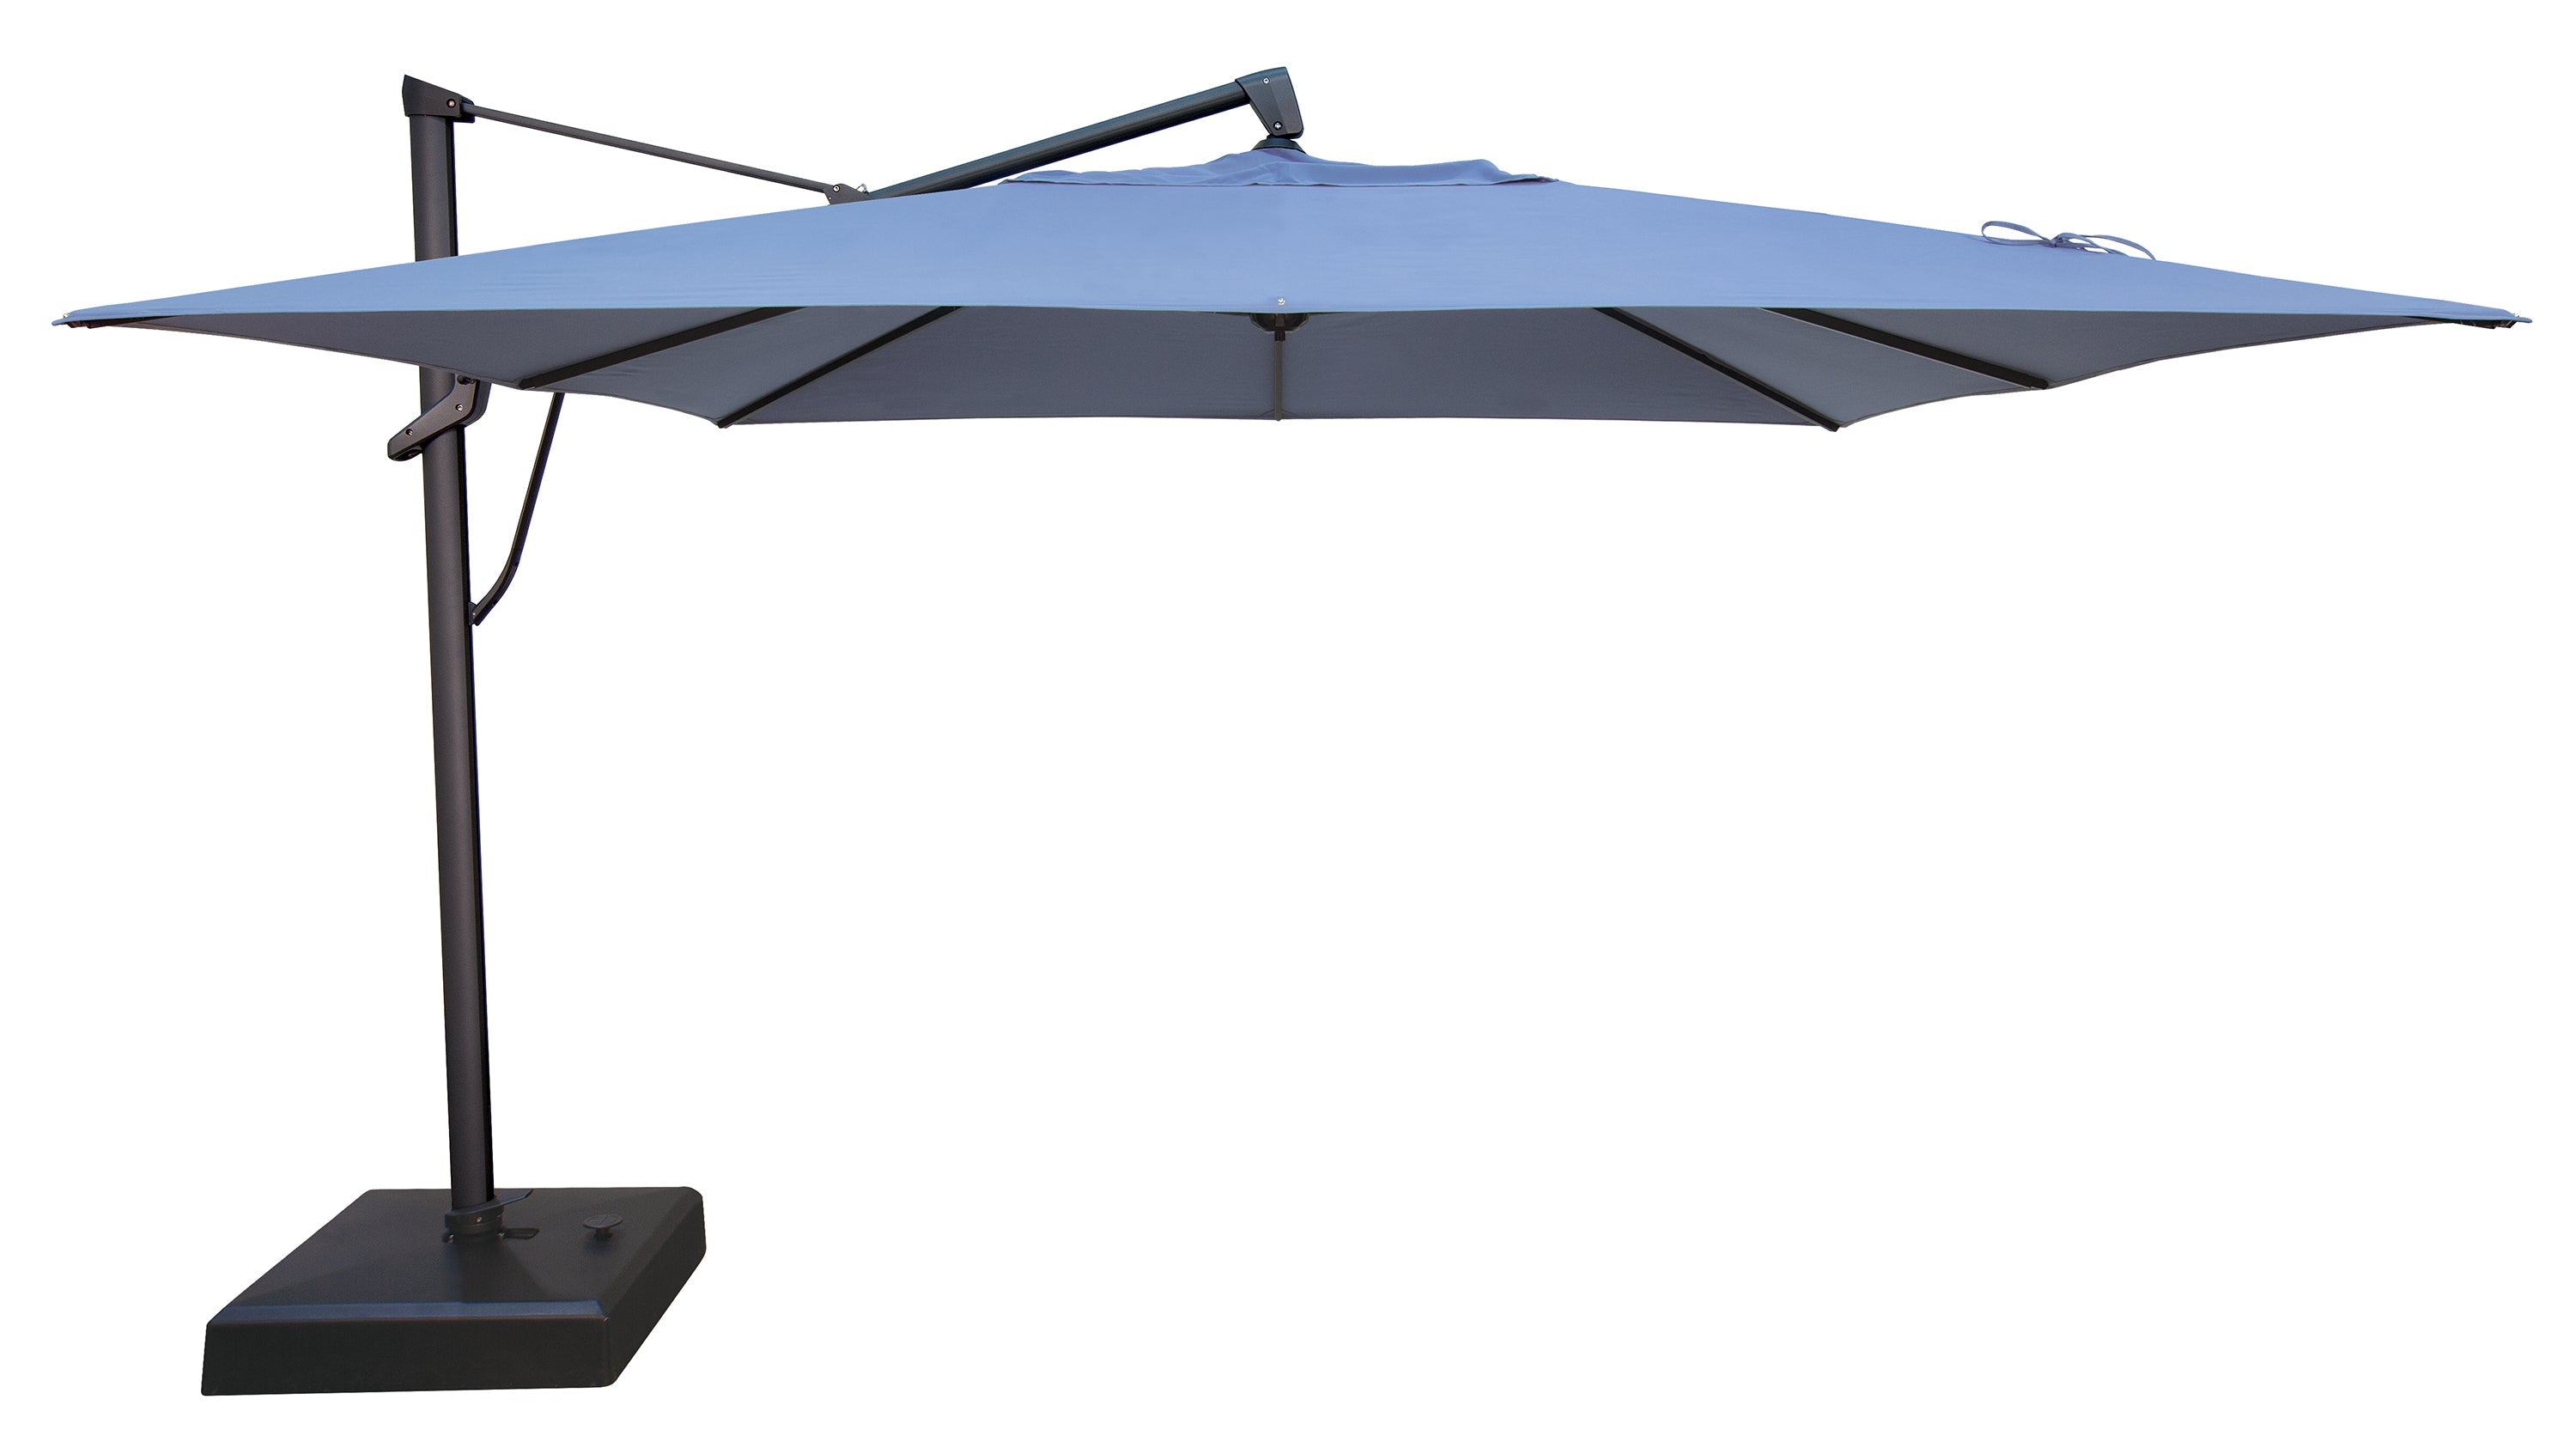 11.5' AKZ PLUS Square Cantilever Umbrella